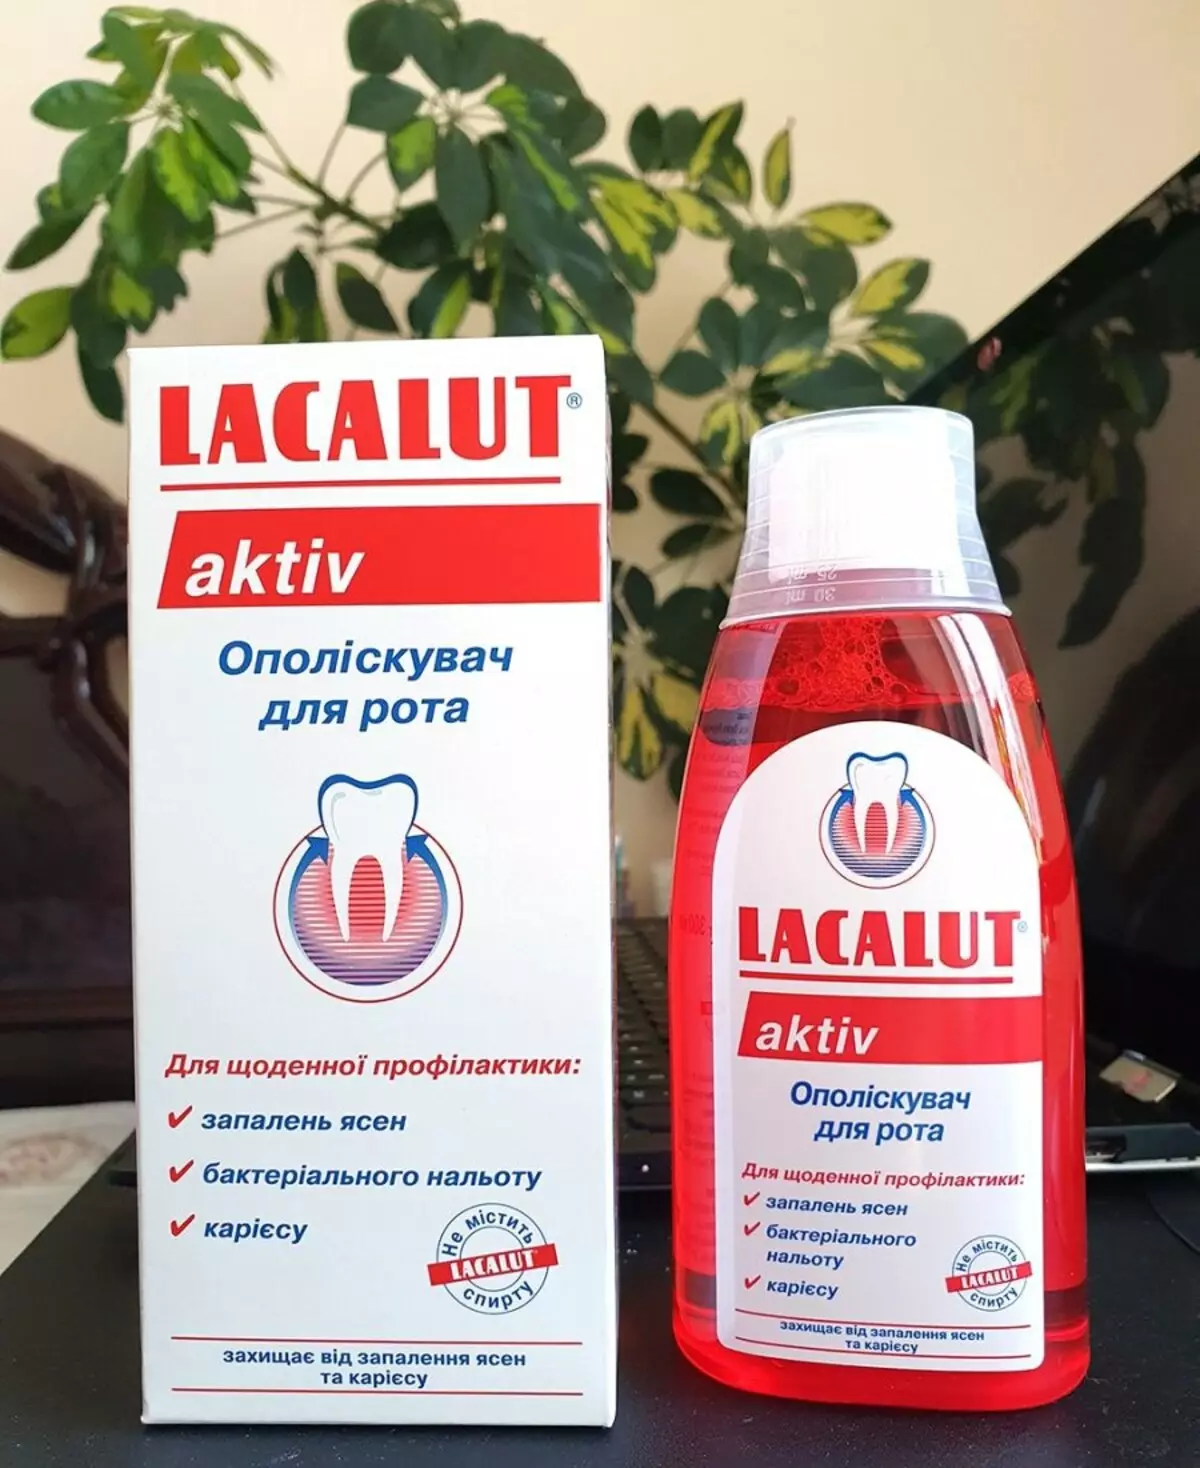 Rinsers Lacalut: Aktiv, ευαίσθητο και λευκό για την στοματική κοιλότητα, τη σύνθεση και τα χαρακτηριστικά της εφαρμογής 24087_3